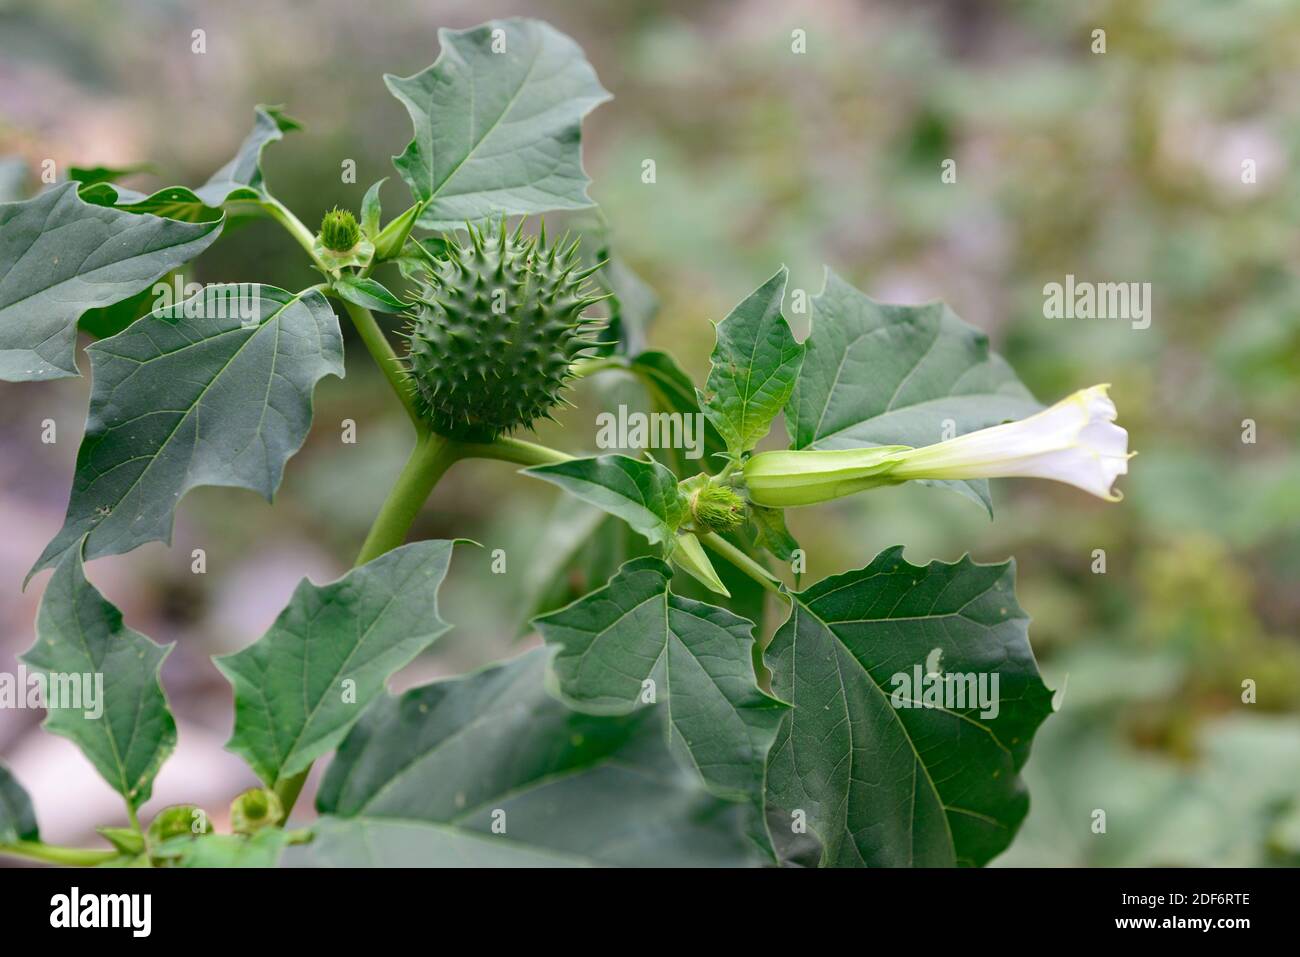 L'herbe Jimson ou la pomme épine (Datura stramonium) est une plante annuelle hallucinogène originaire du Mexique mais naturalisée dans d'autres régions tempérées. Fleur, Banque D'Images